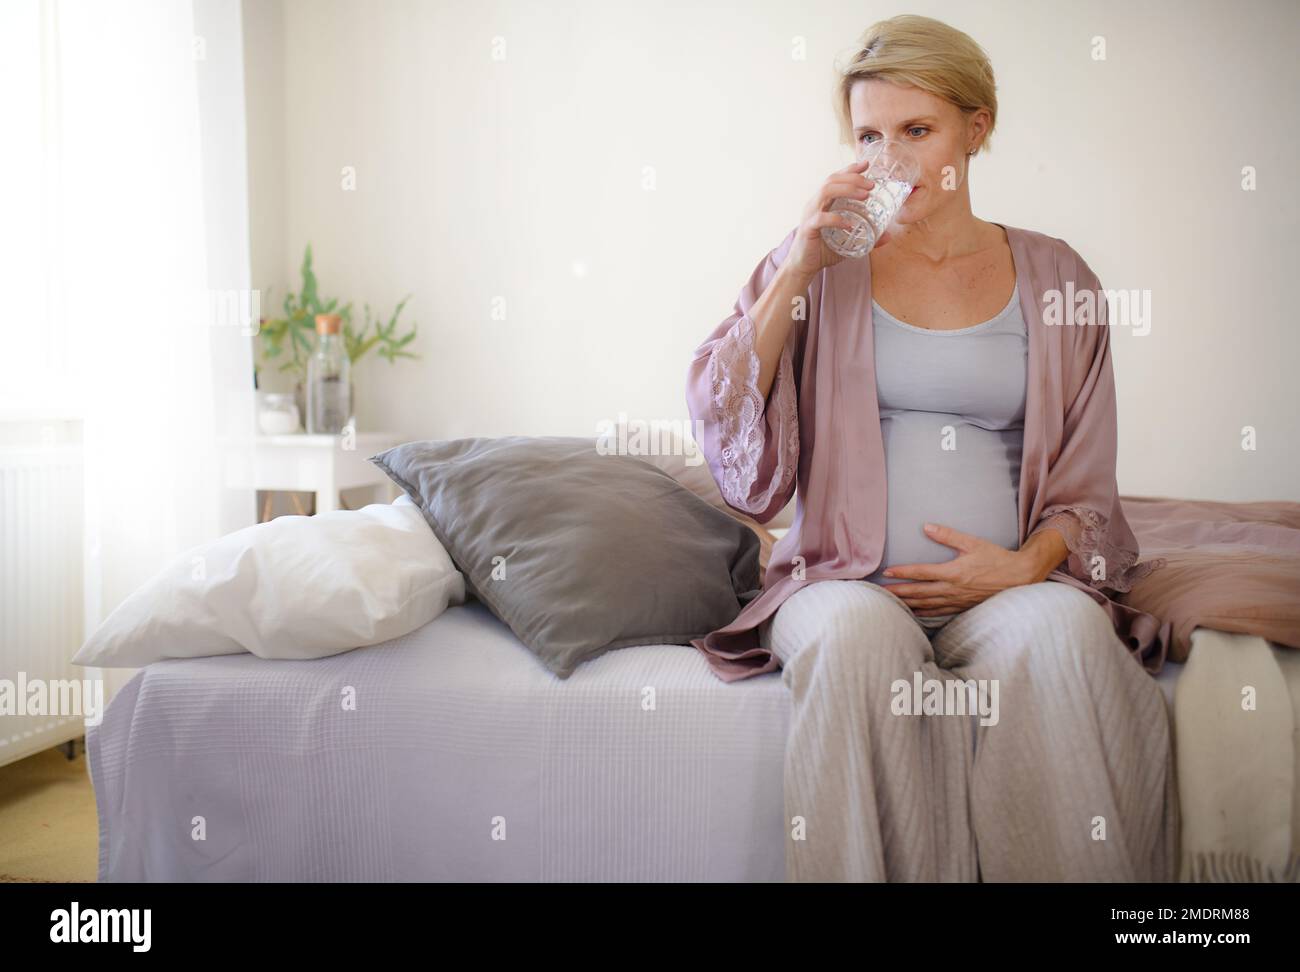 Schwangere Frau trinkt morgens Wasser in ihrem Bett. Gesunder Lebensstil und Morgenroutine in der Schwangerschaft, Concpet. Stockfoto